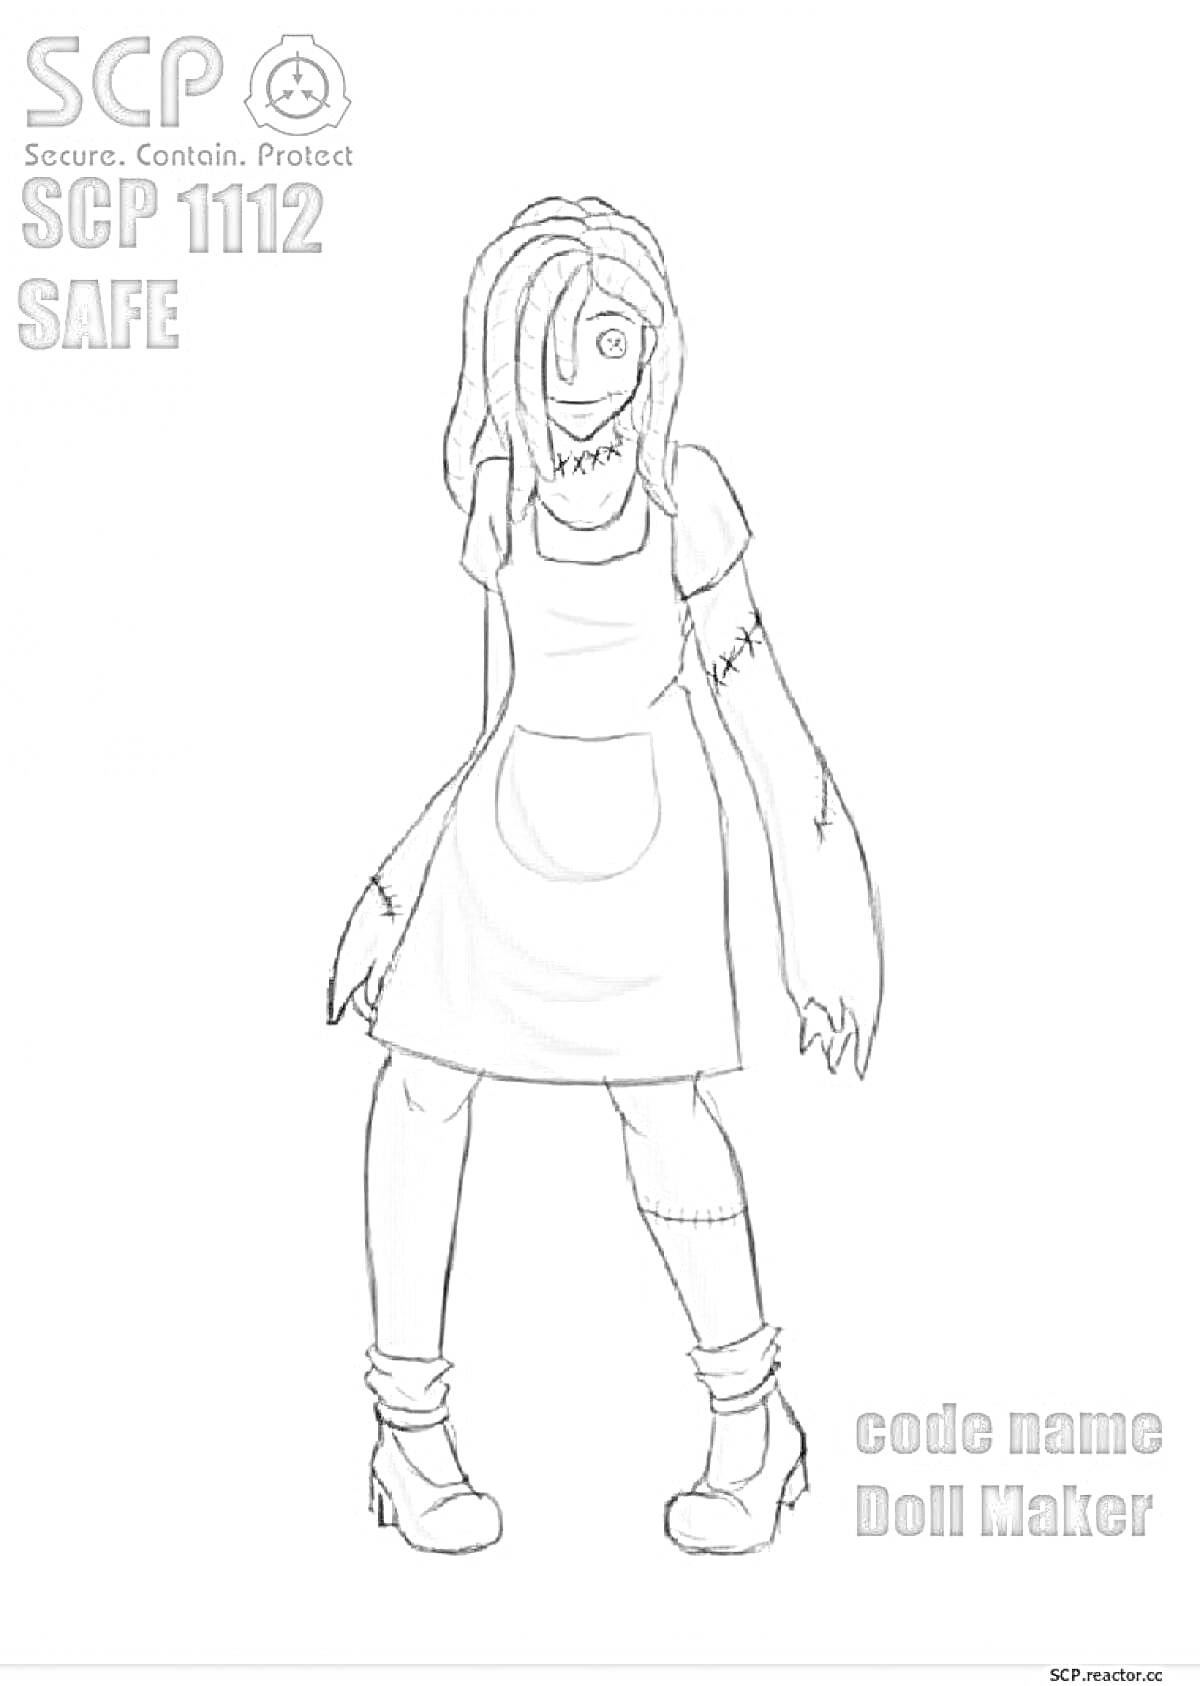 Раскраска SCP 1112 - Doll Maker с глазами-окунями, в платье и фартуке, с когтистыми руками и шрамами